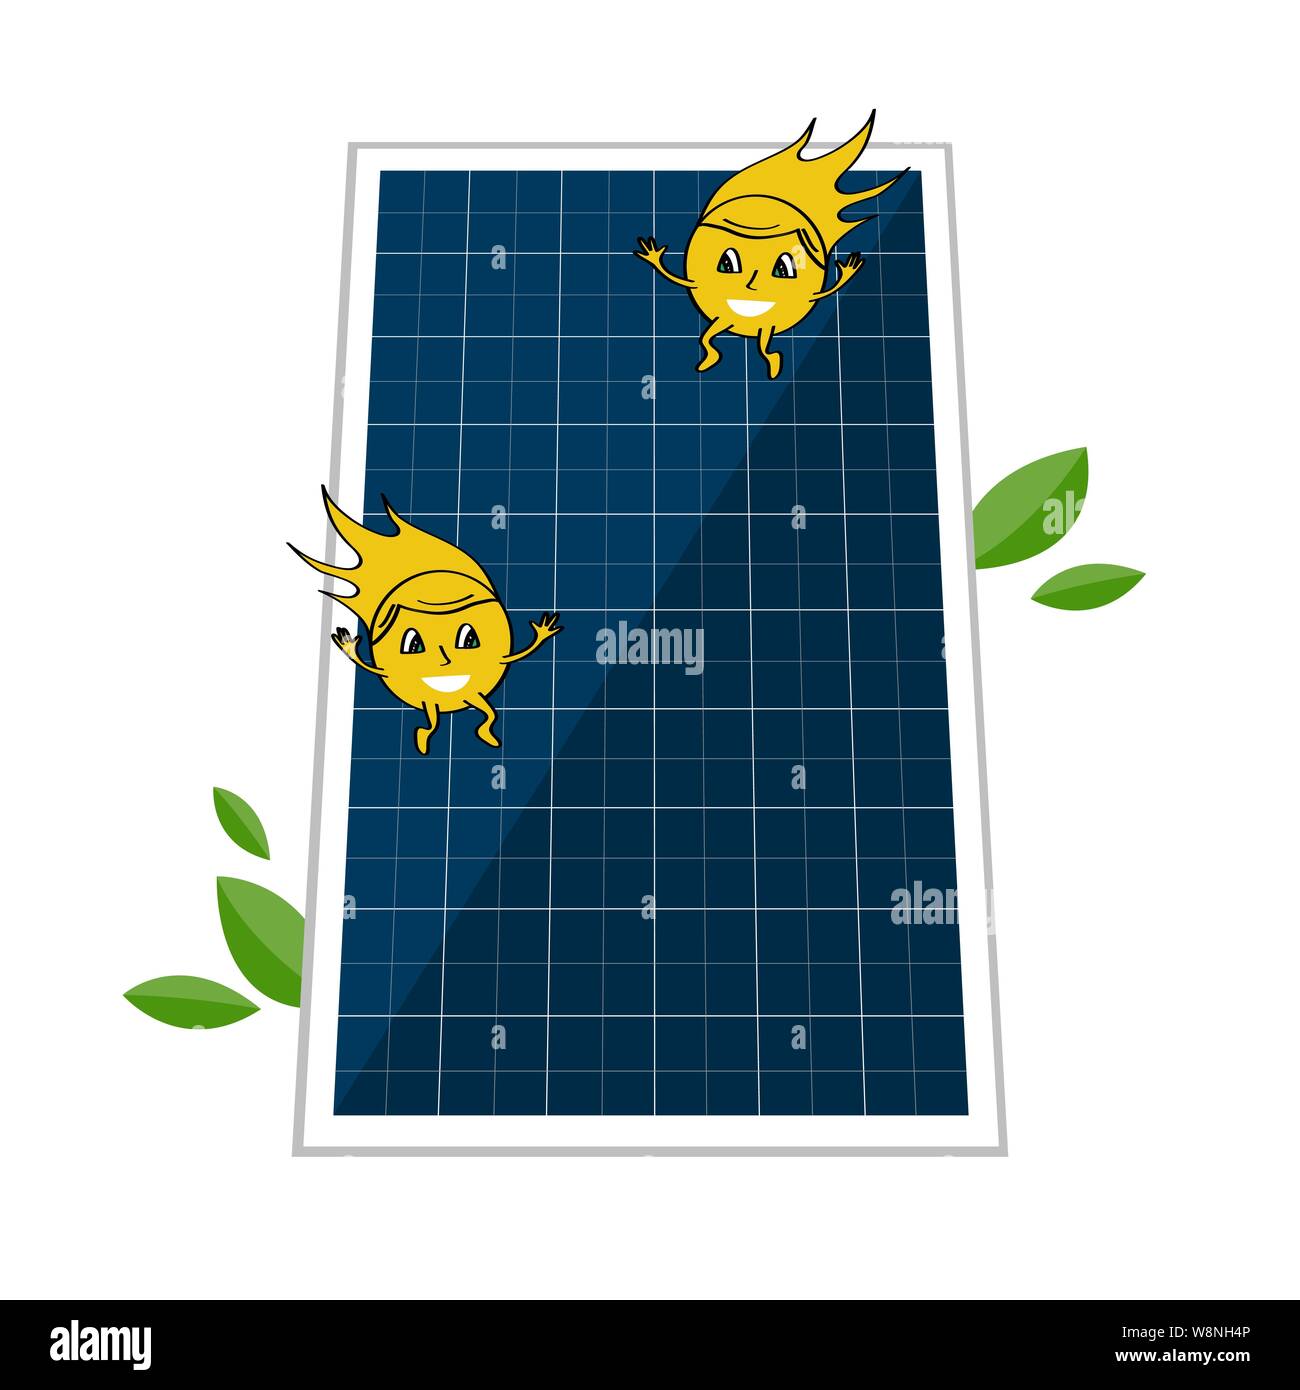 La pâte et deux videos cute sun beam caractères. L'énergie solaire et le concept de puissance pour sauver l'environnement. Autre source d'énergie renouvelable Illustration de Vecteur